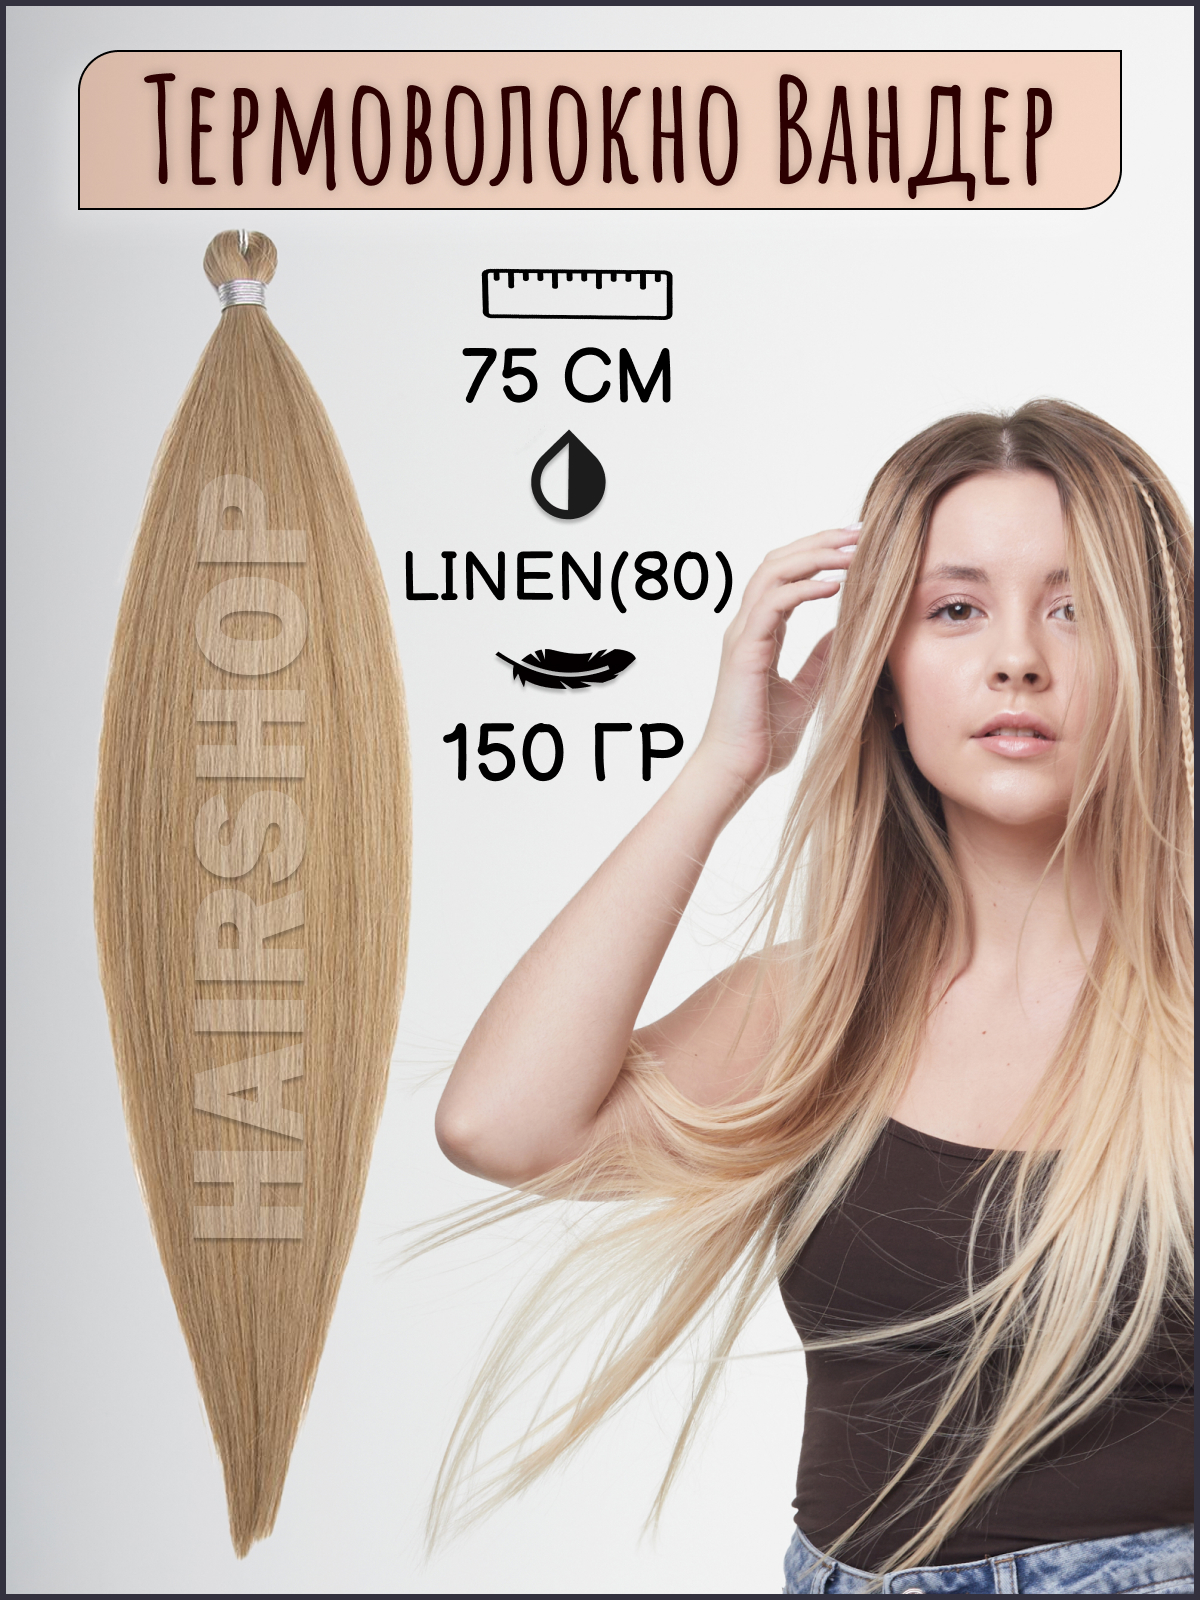 Термоволокно для наращивания Hairshop Вандер Linen 80 150г 150см термоволокно для наращивания hairshop вандер grey 9 150г 150см